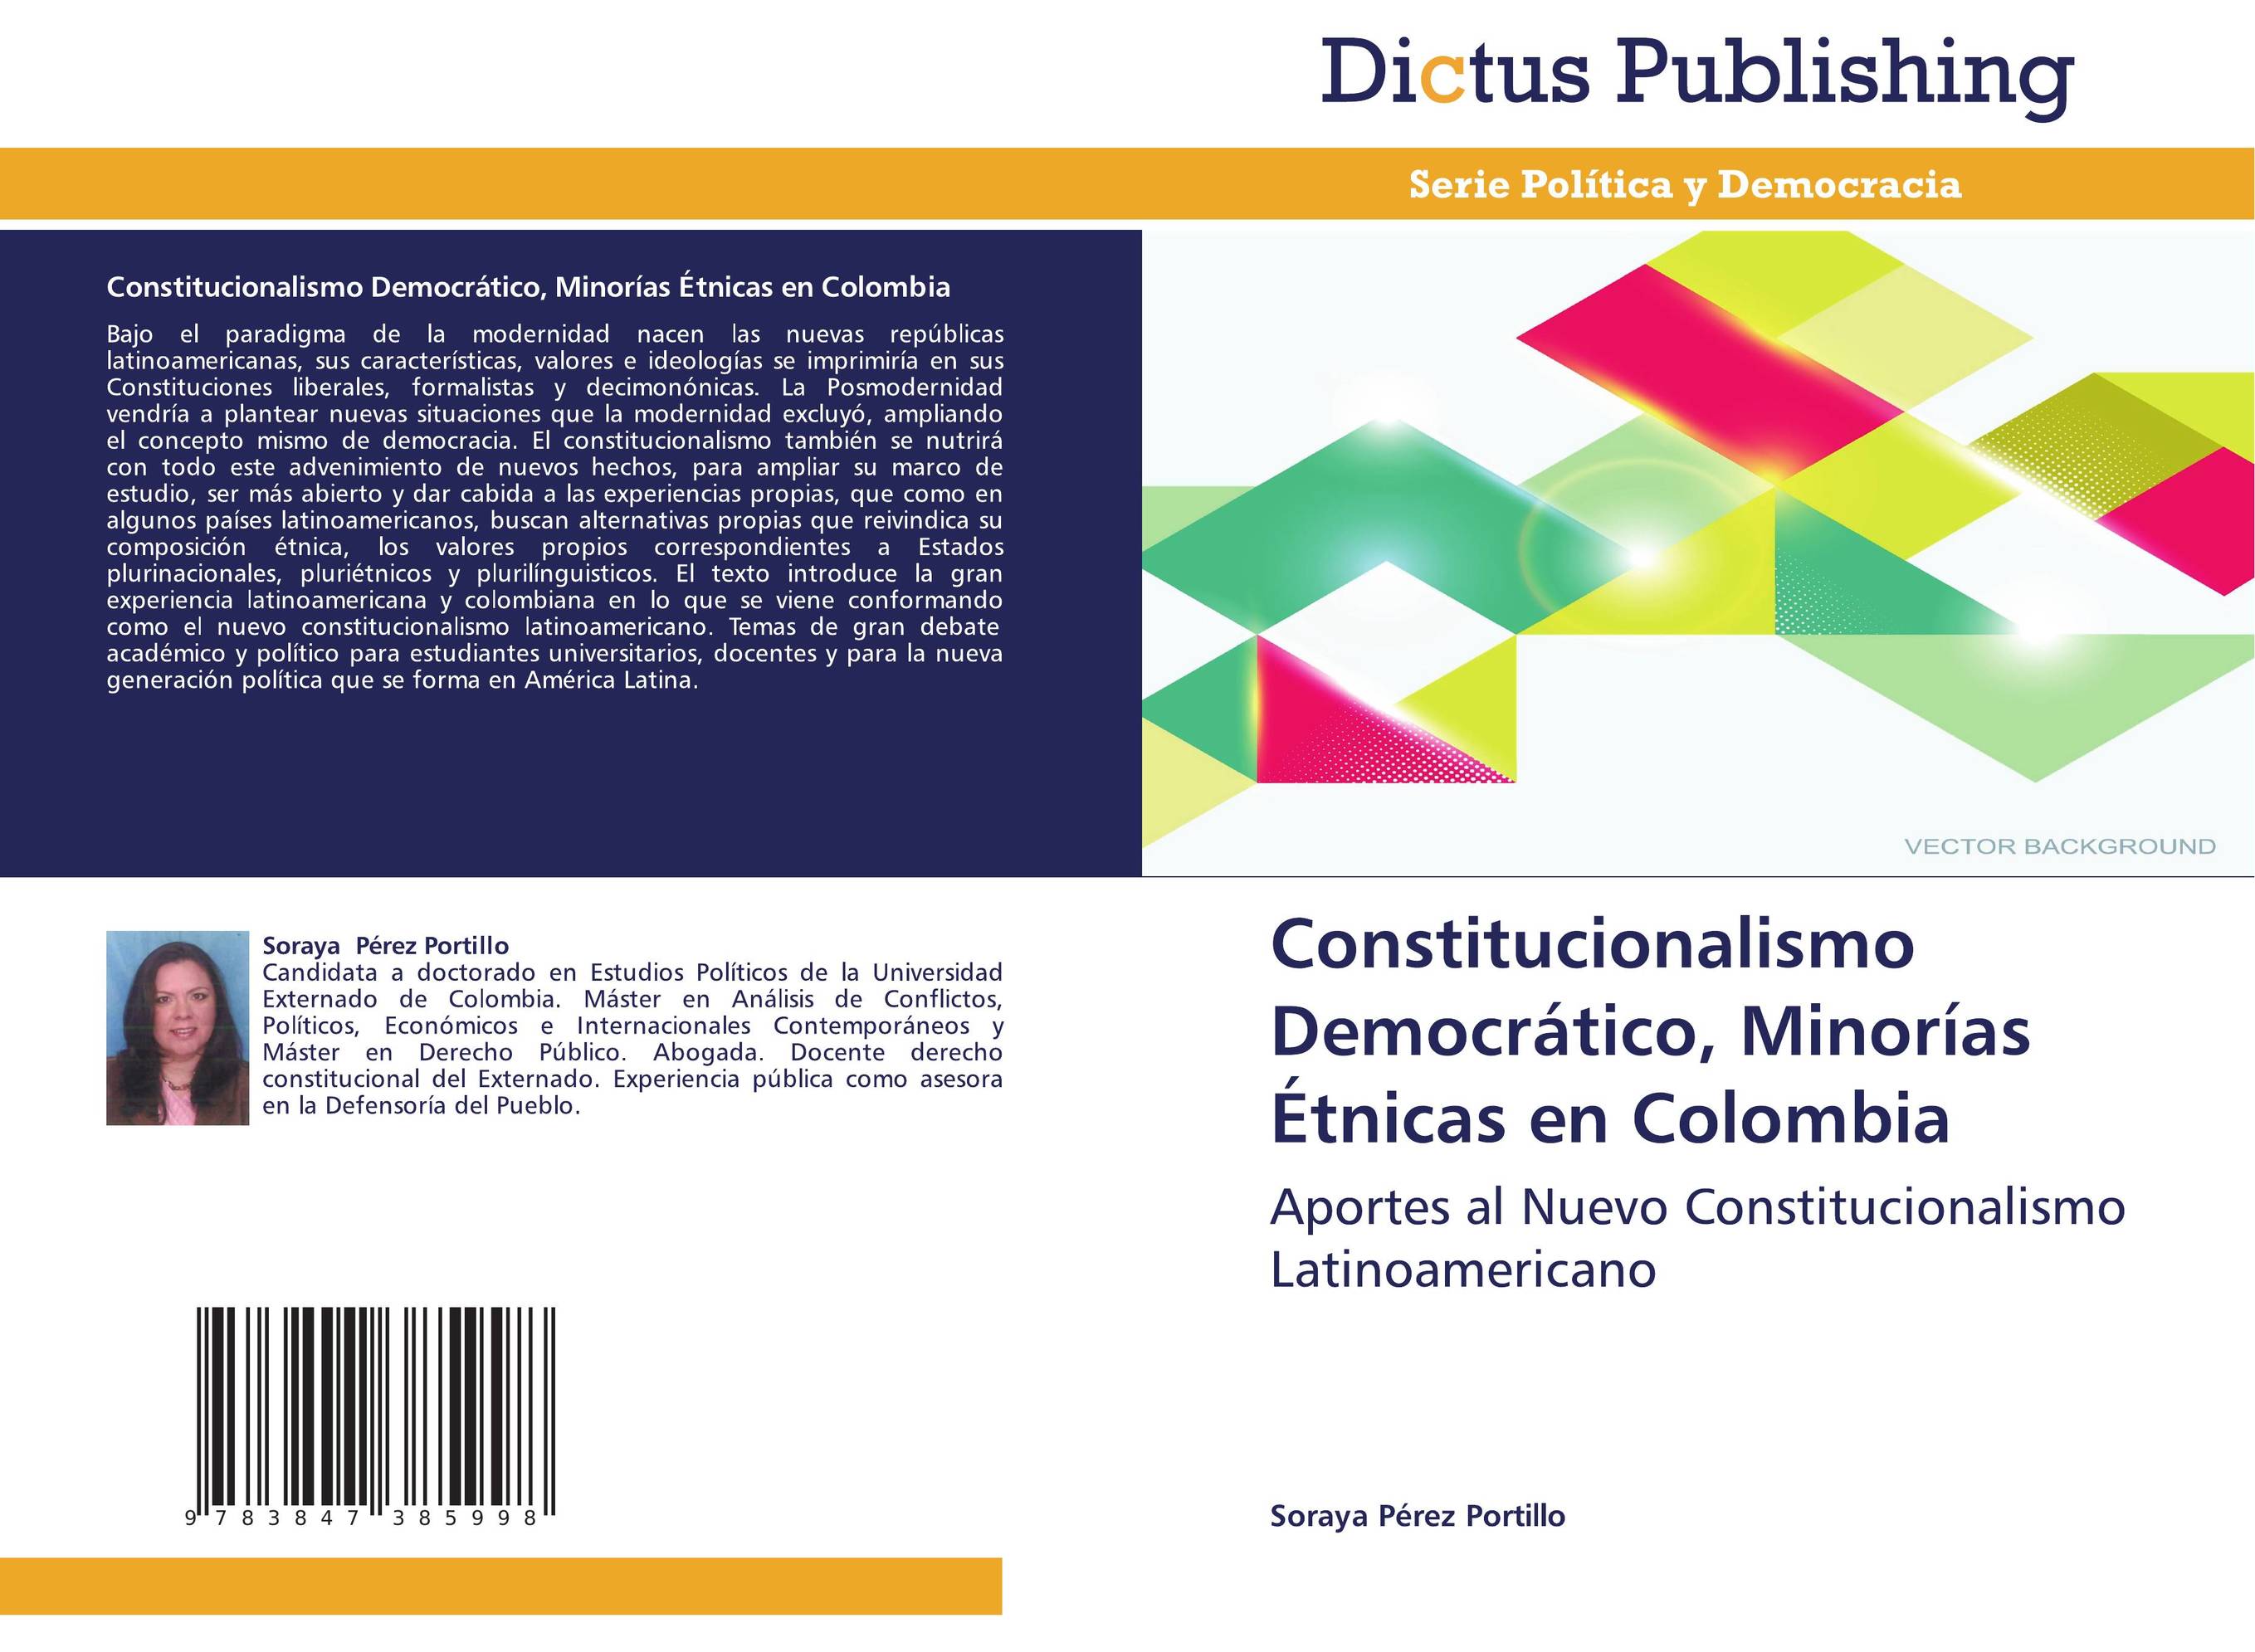 Constitucionalismo Democrático, Minorías Étnicas en Colombia